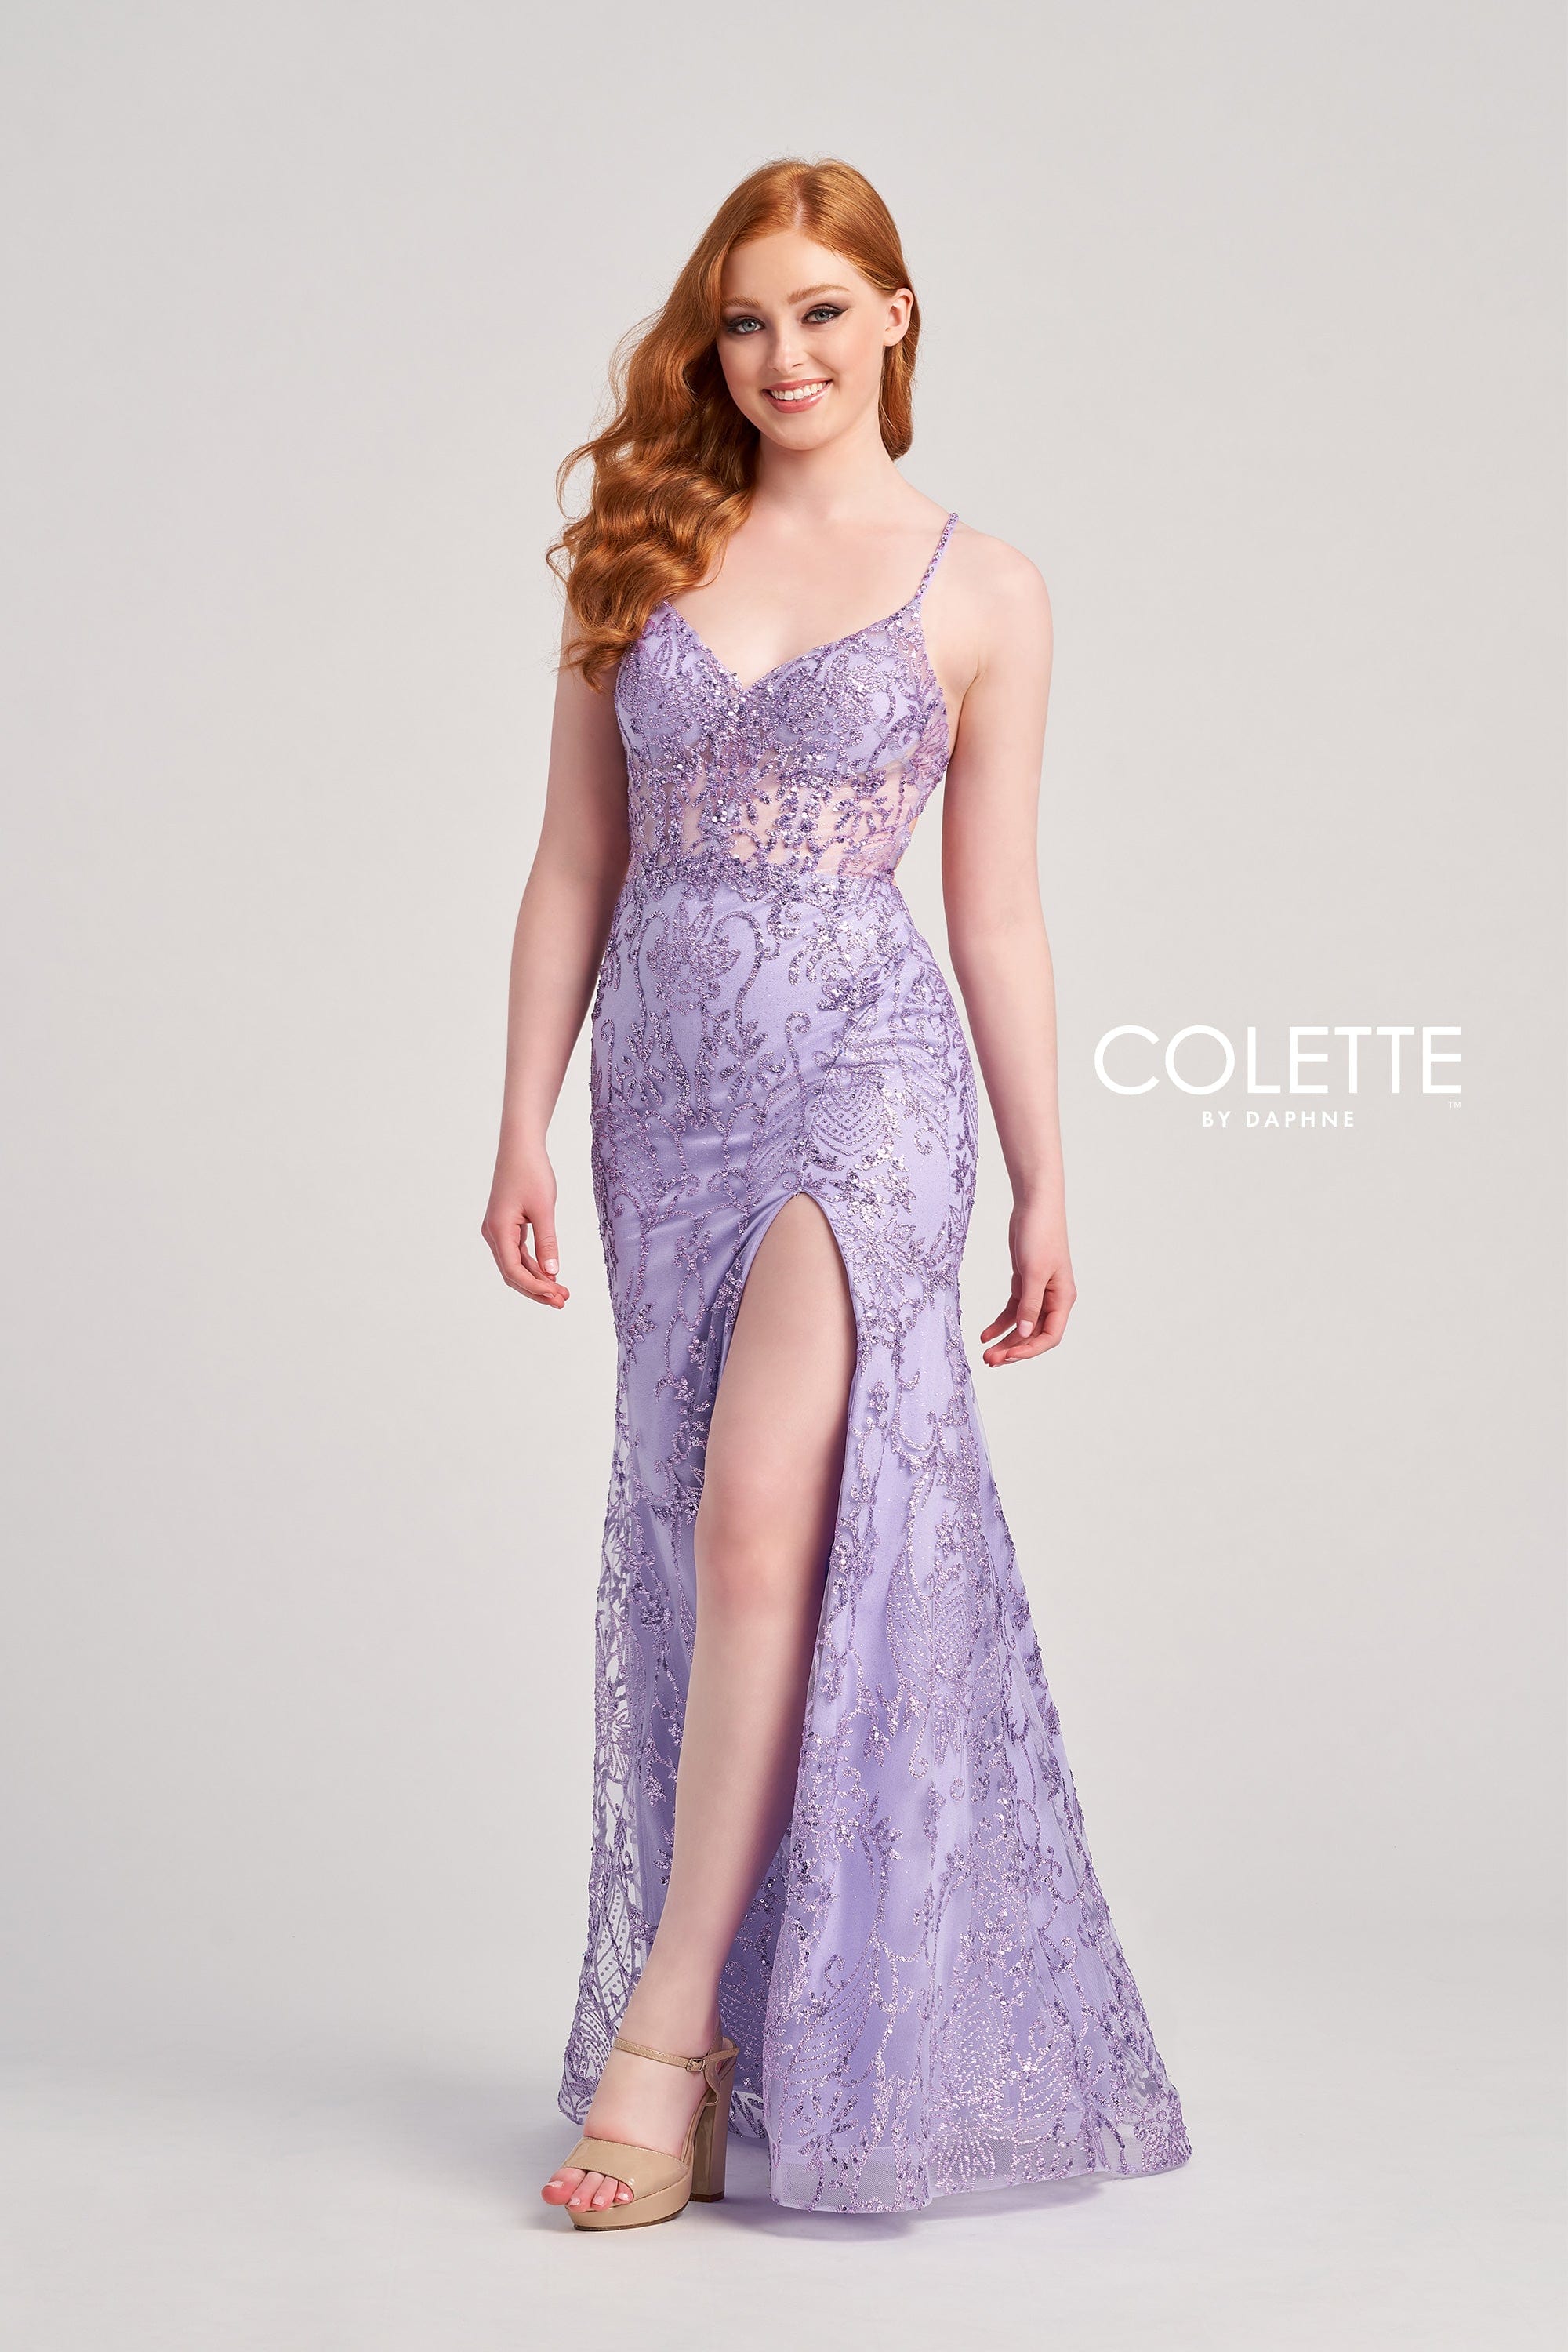 Colette for Mon Cheri Prom Colette: CL5203